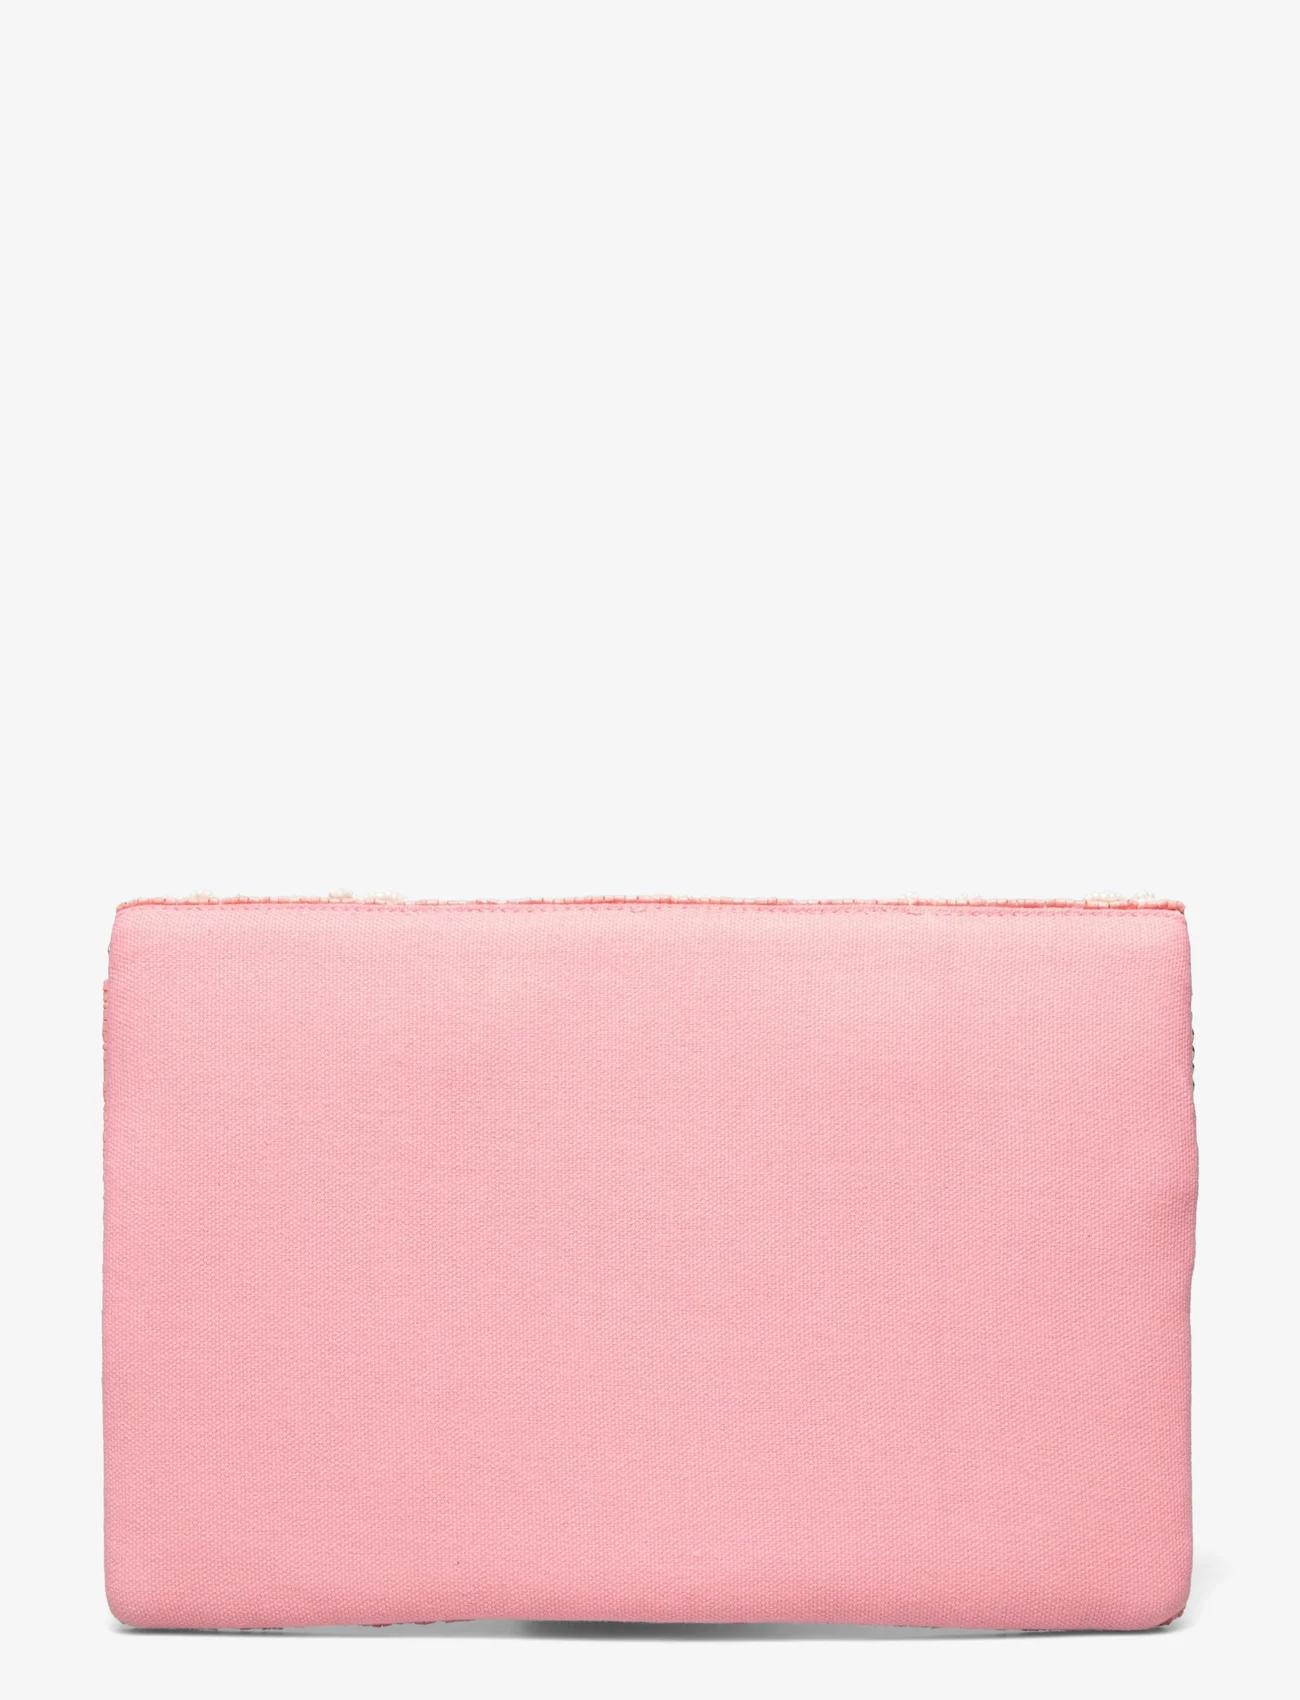 Pipol's Bazaar - Le Jardin Clutch Pink - odzież imprezowa w cenach outletowych - pink - 1